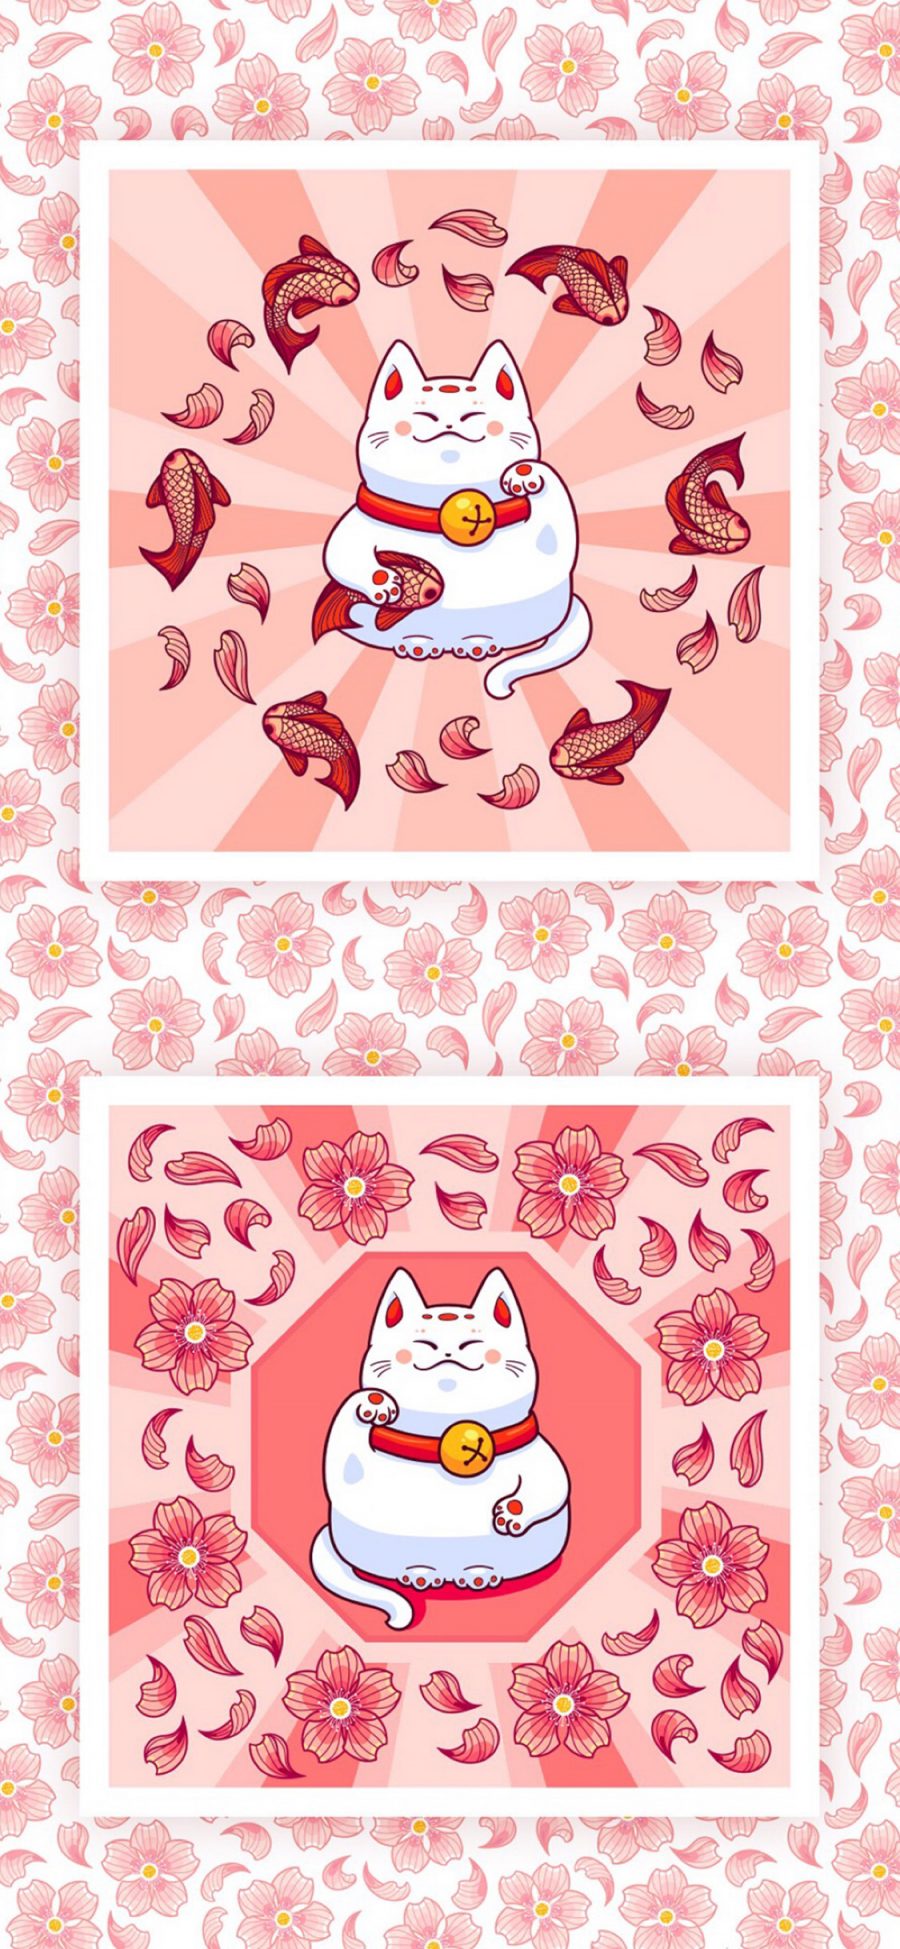 [2436×1125]日本 招财猫 碎花 平铺 苹果手机动漫壁纸图片